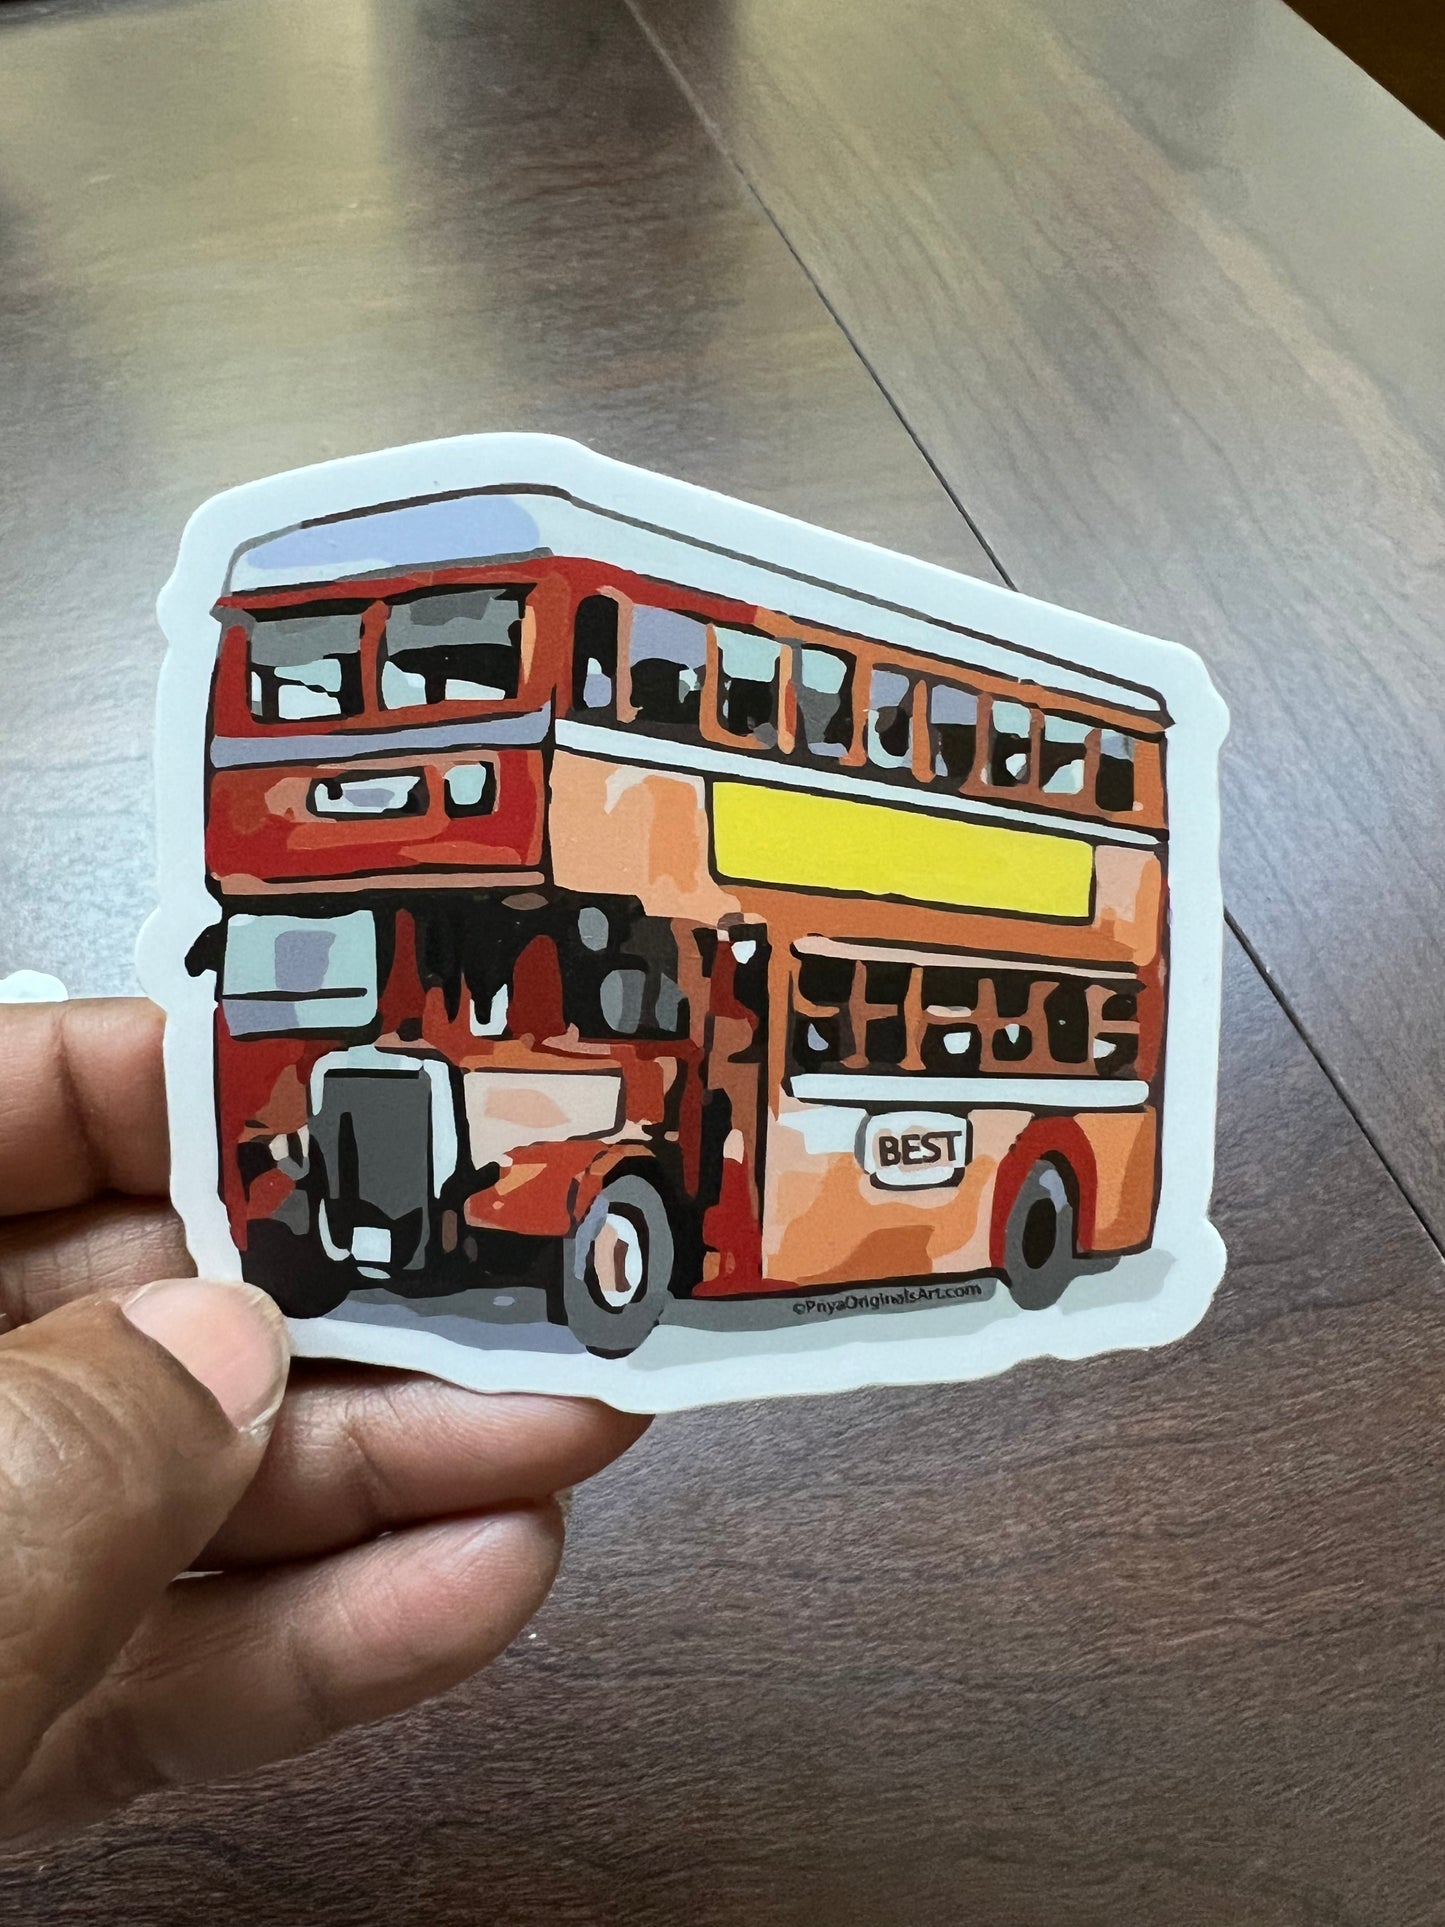 Sticker: Bombay’s BEST bus